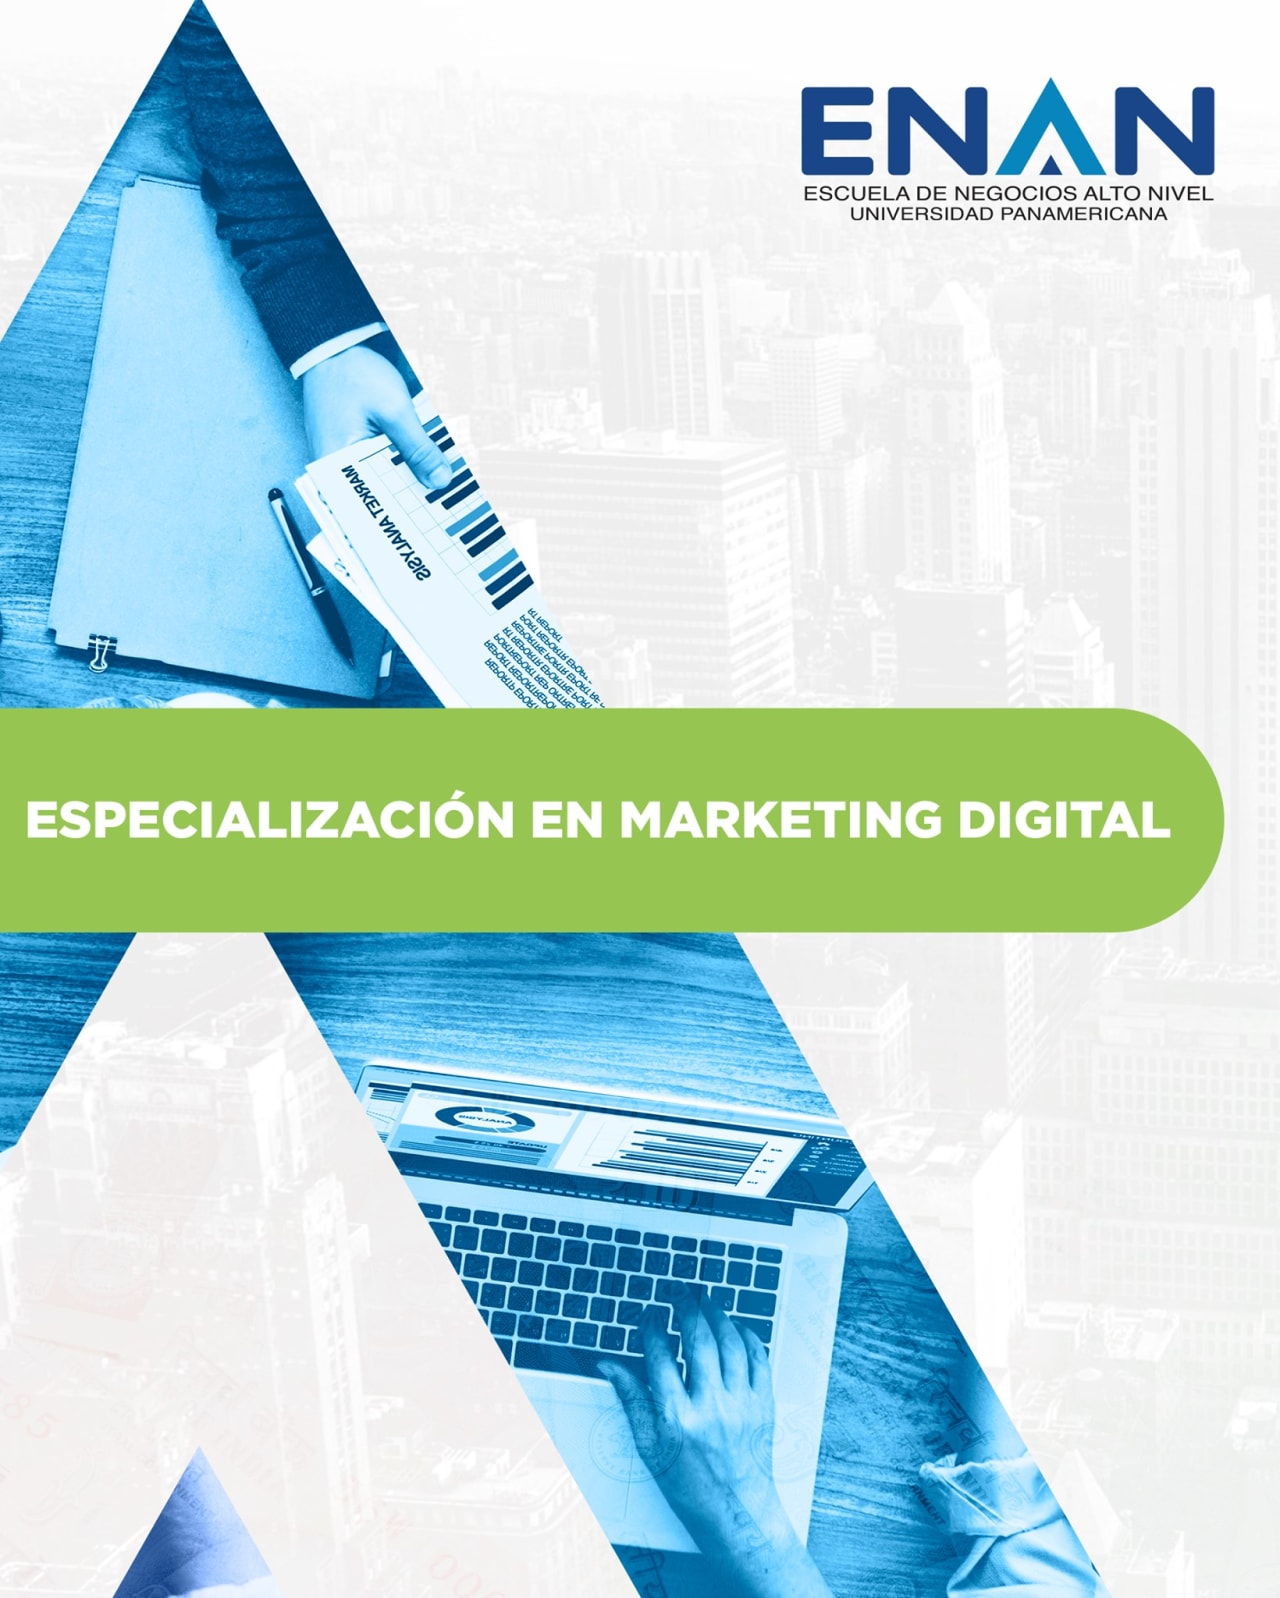 Escuela de Negocios Alto Nivel - Universidad Panamericana de Guatemala Specialization in Digital Marketing